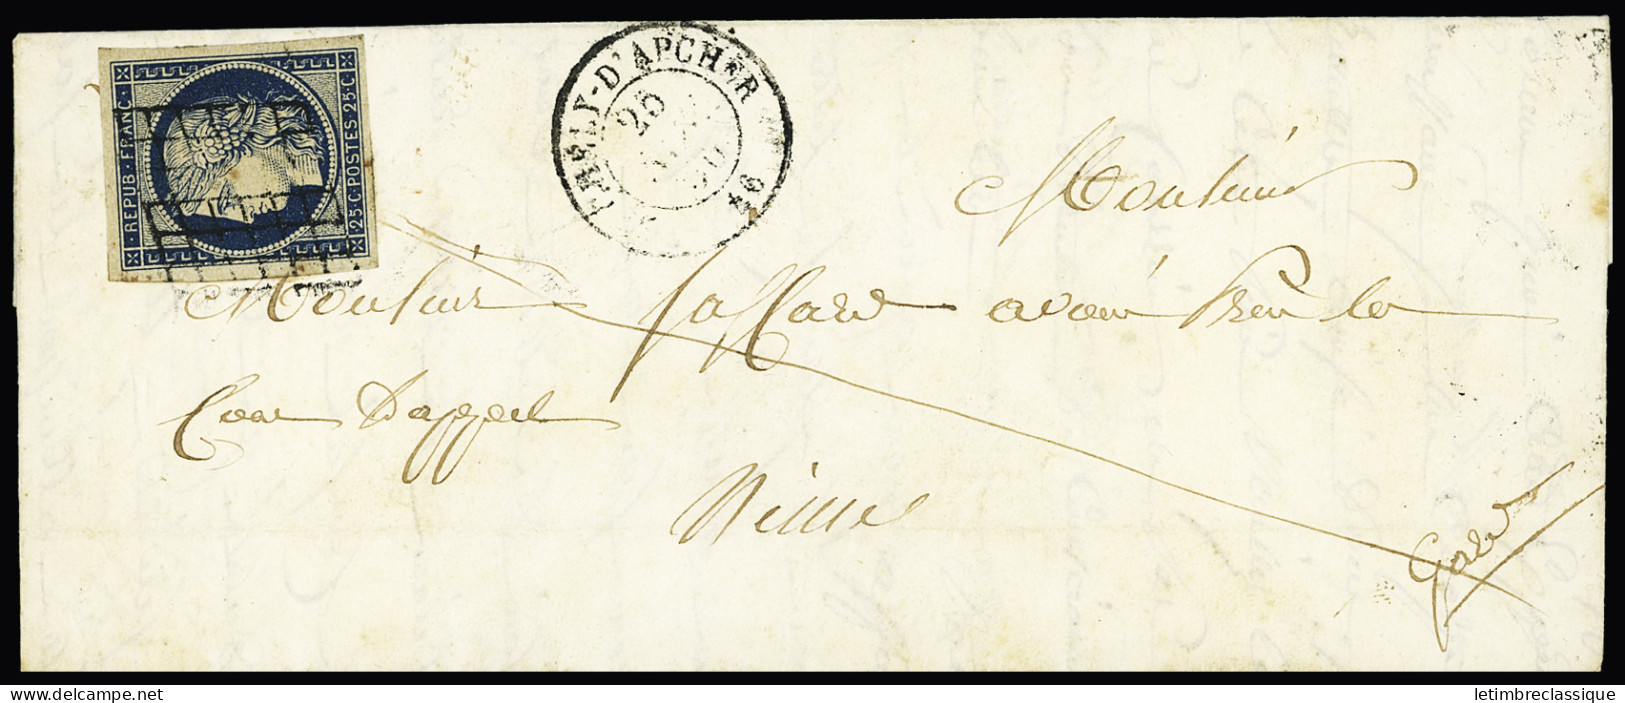 Lettre N°4 OBL Grille + T15 "St Chely D'Apcher 46" Lozère (1850) Sur Lettre, Ind 20, TB - 1849-1850 Ceres